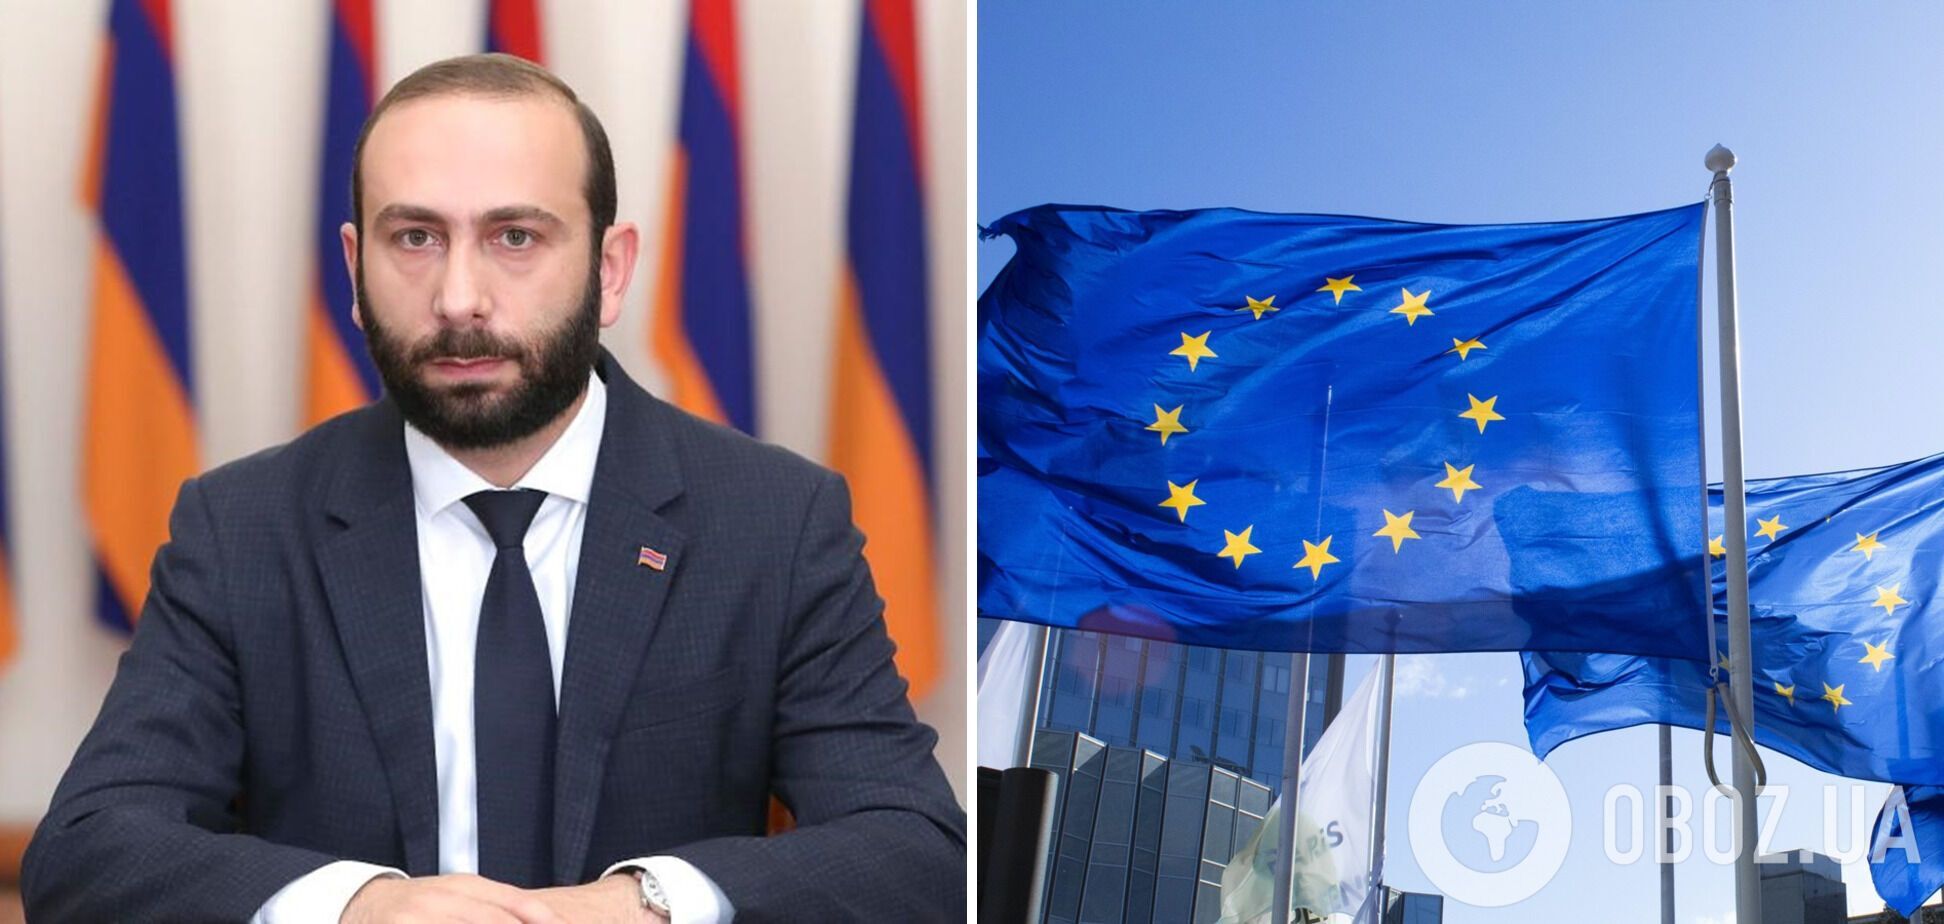 Подальше от РФ: в Армении официально подтвердили, что обсуждают идею членства в ЕС